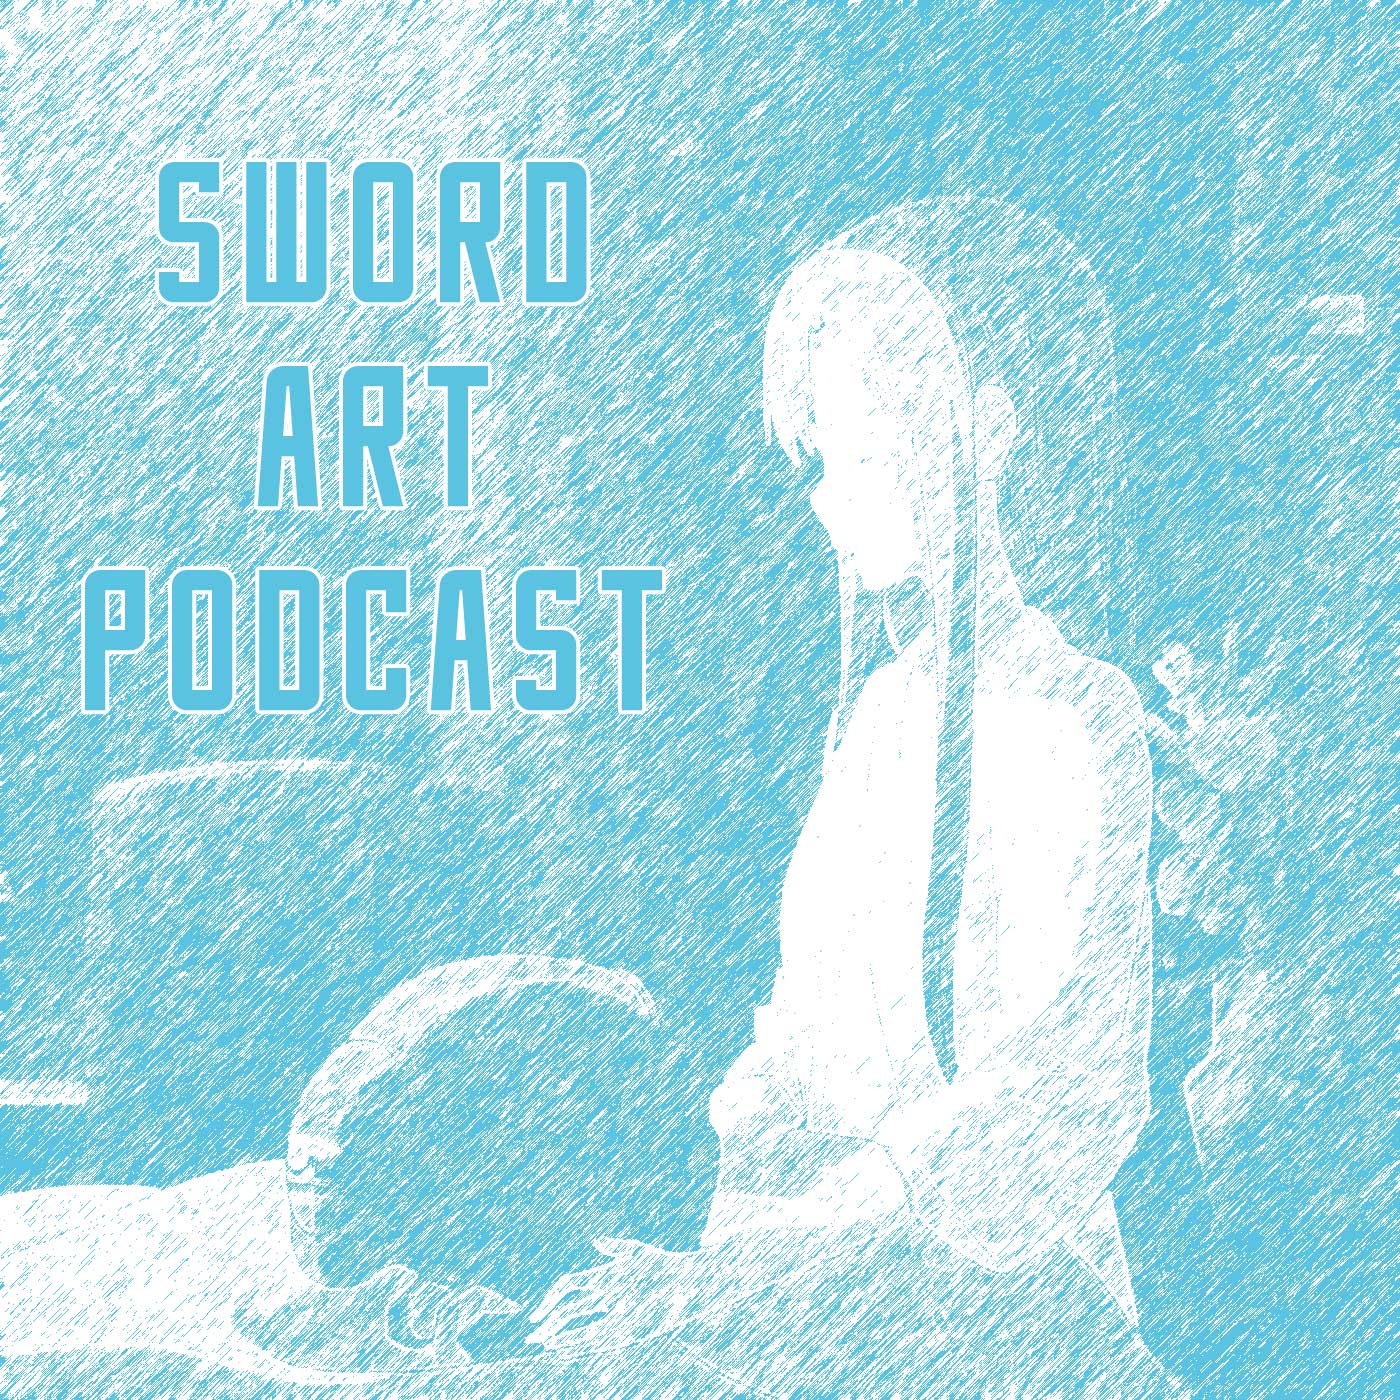 Sword Art Podcast - Season 5 - Epsiode 3